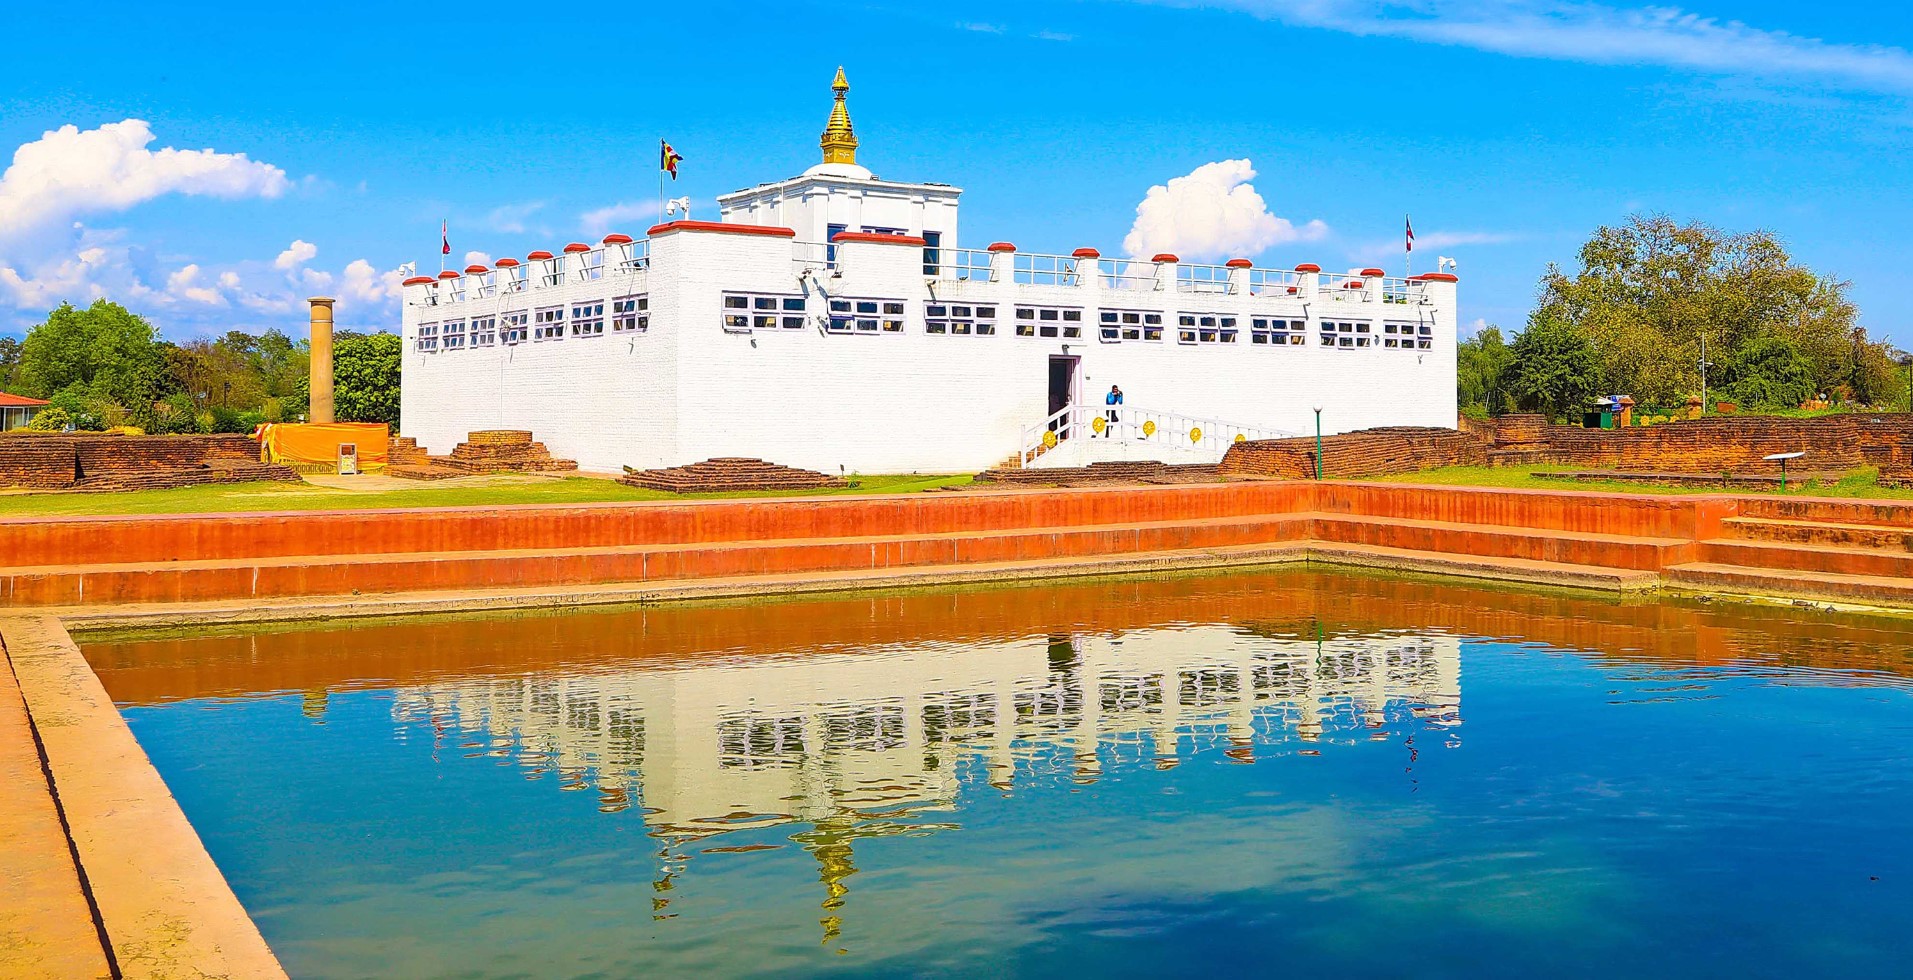 पुल निमार्णमा ढिलाइ हुँदा लुम्बिनी जाने पर्यटकलाई सास्ती